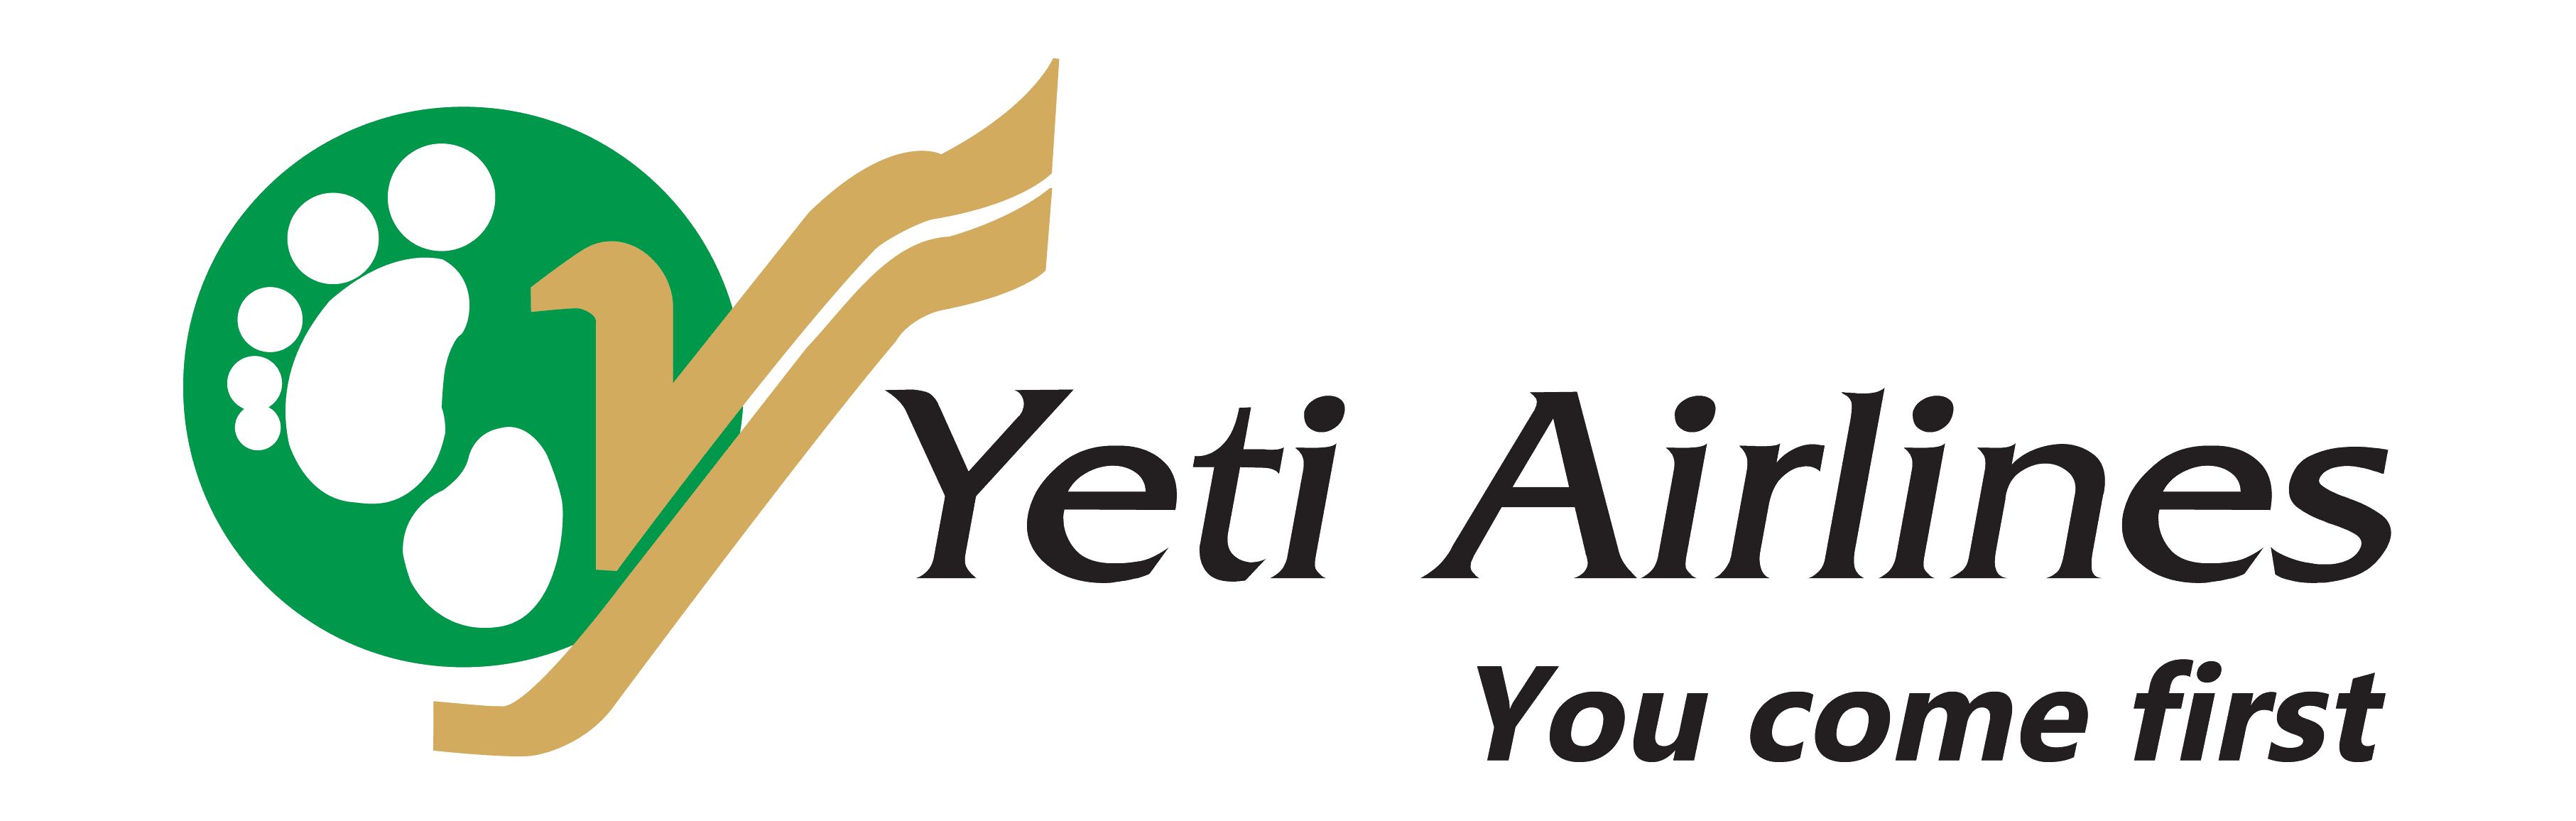 yeti airlines